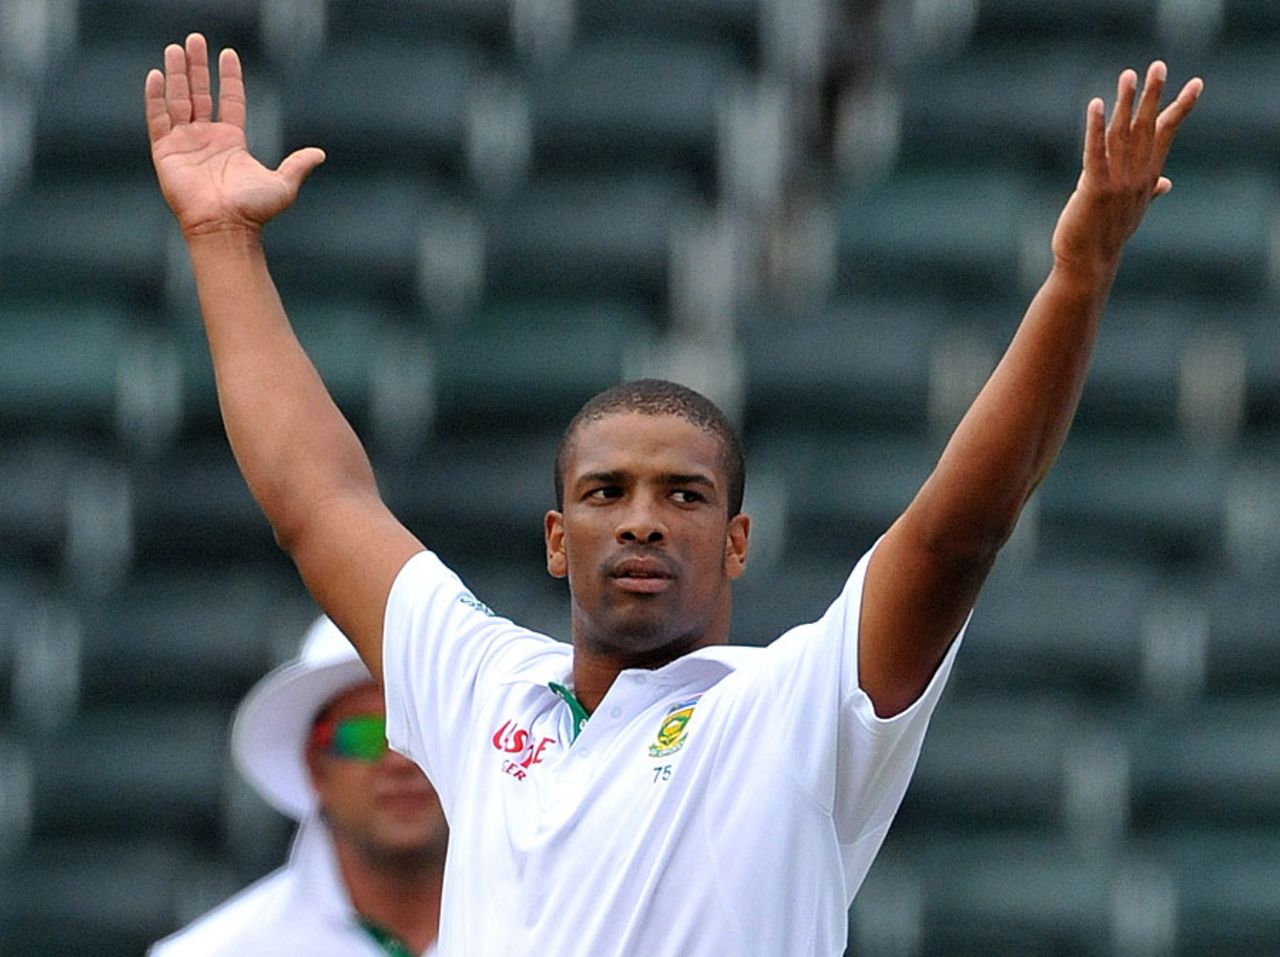 Vernon Philander took 5 for 70, South Africa v Australia, 2nd Test, Johannesburg, 5th day, November 21, 2011